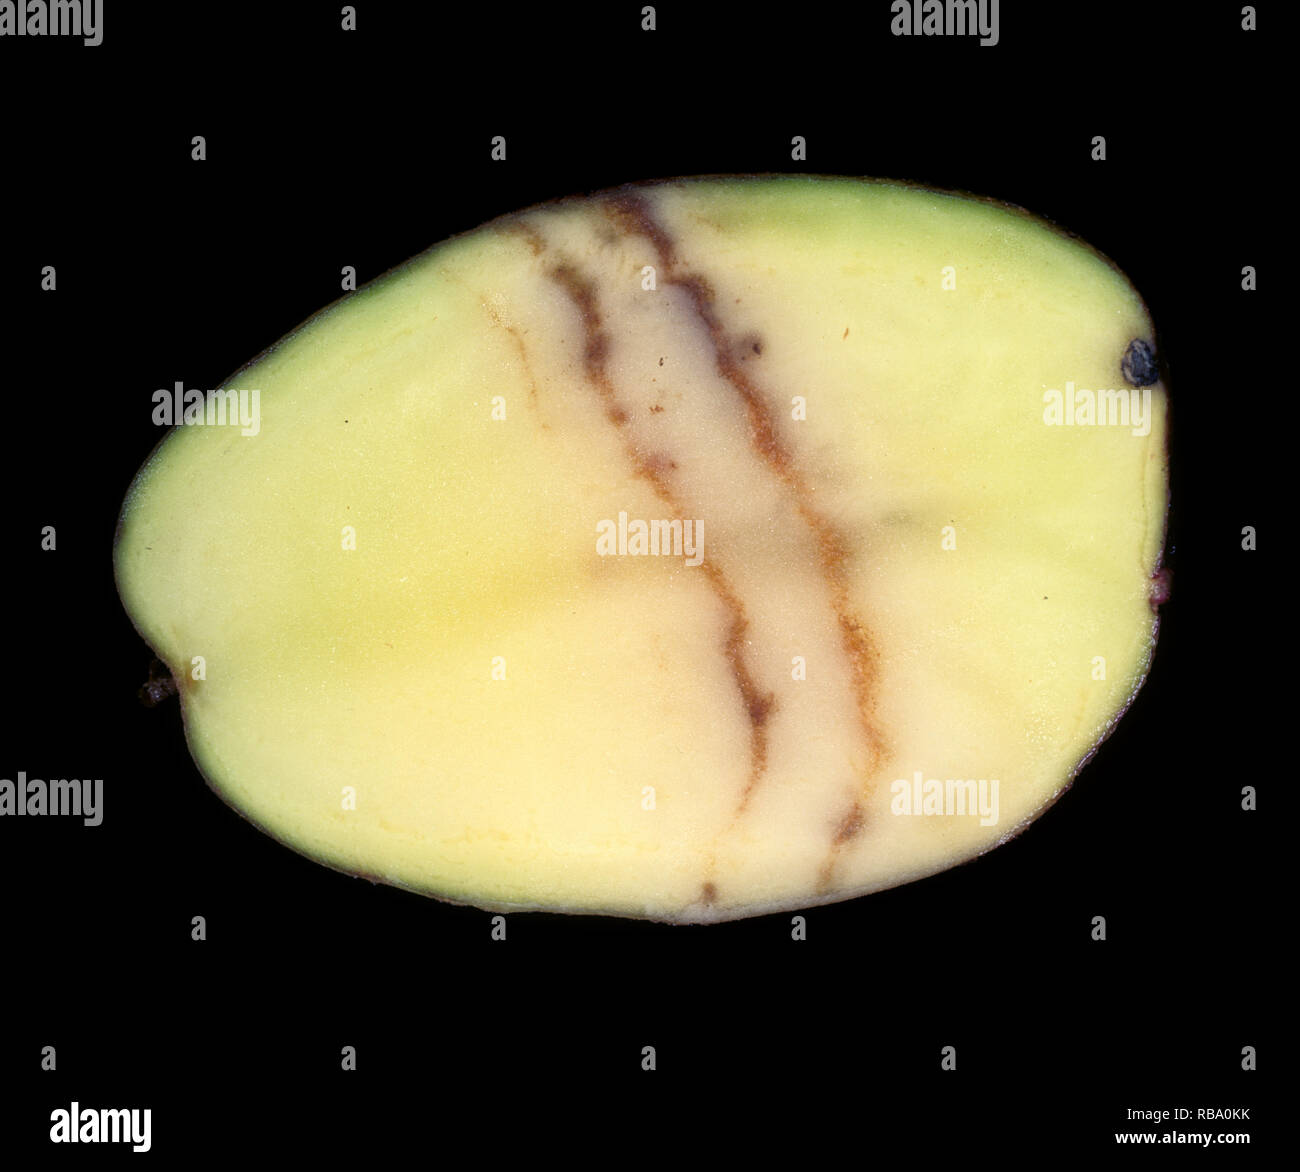 Spraing sintomo della fecola di patate mop top virus (PMTV) nella patata tubero sezione Foto Stock